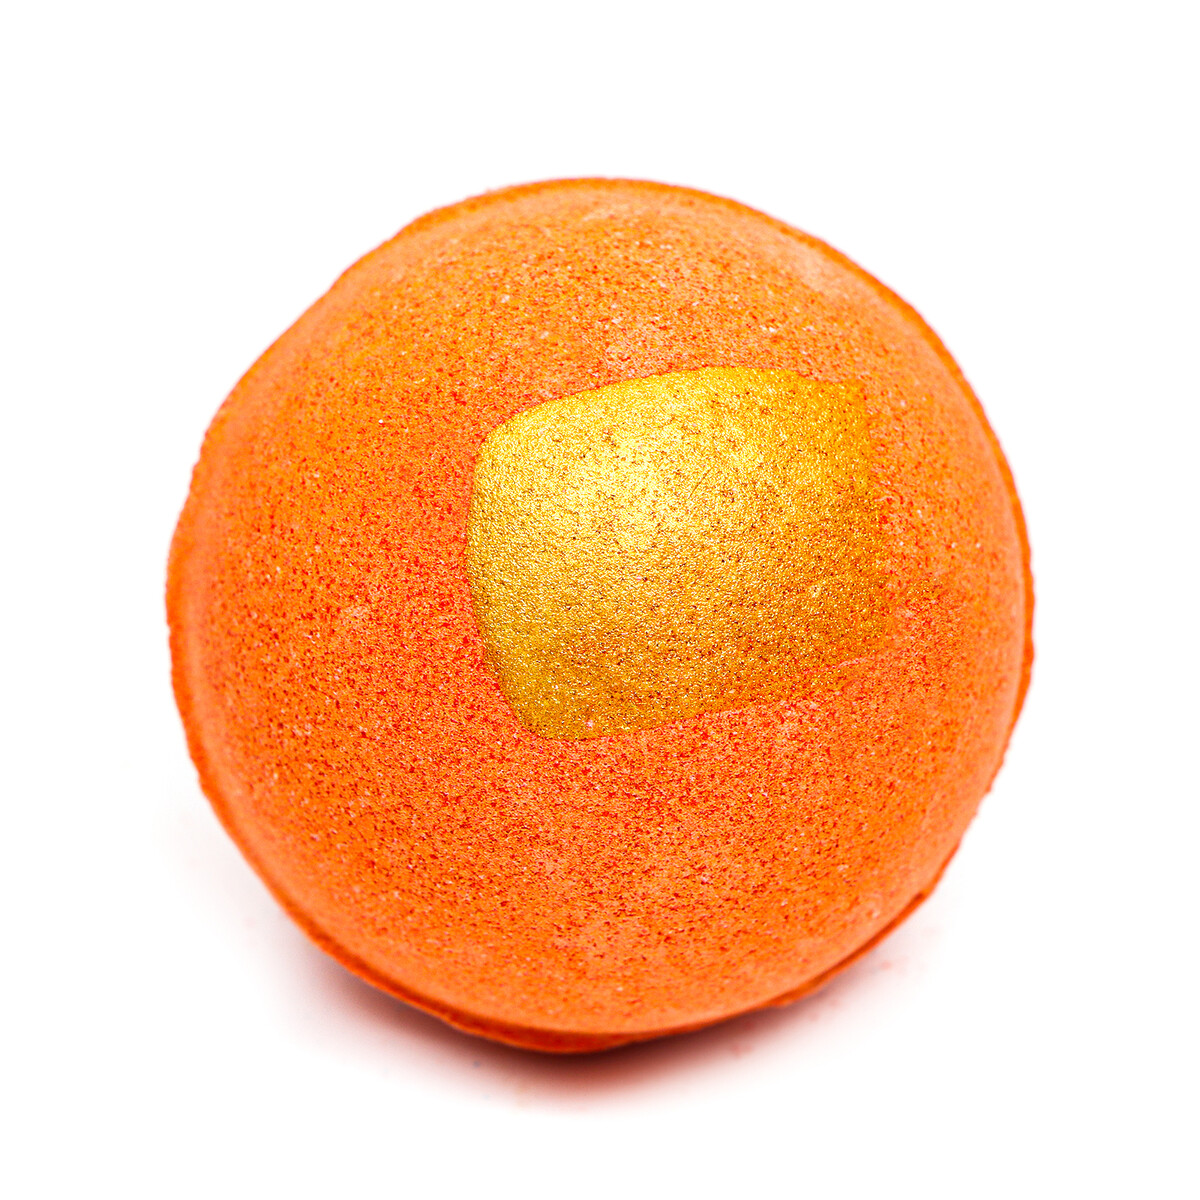 Бомбочка для ванны, оранжевая, с золотой полоской, 110 г бомбочка для ванны с твердой пеной бадьяном апельсином и гвоздикой оранжевый